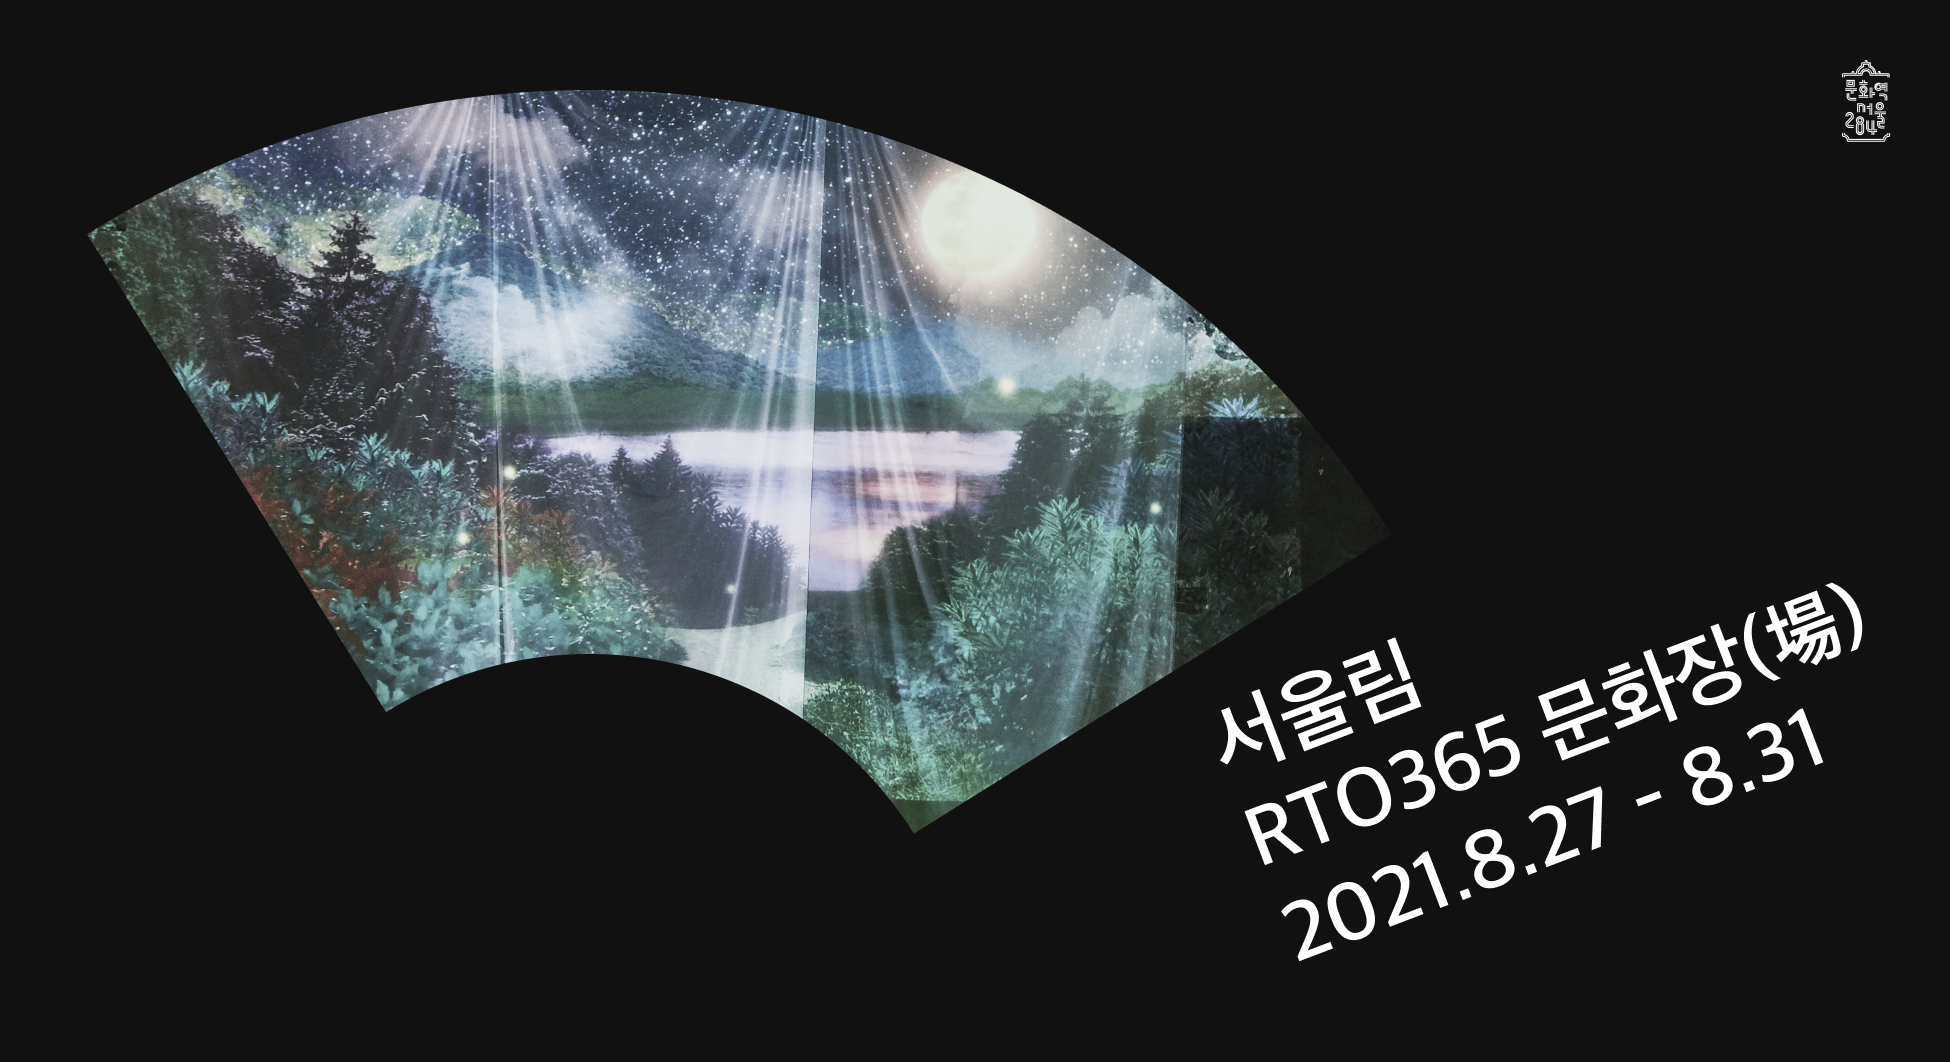 2021 RTO 365 문화장(場) 프로그램 <서울림 도심 속 불멍> 